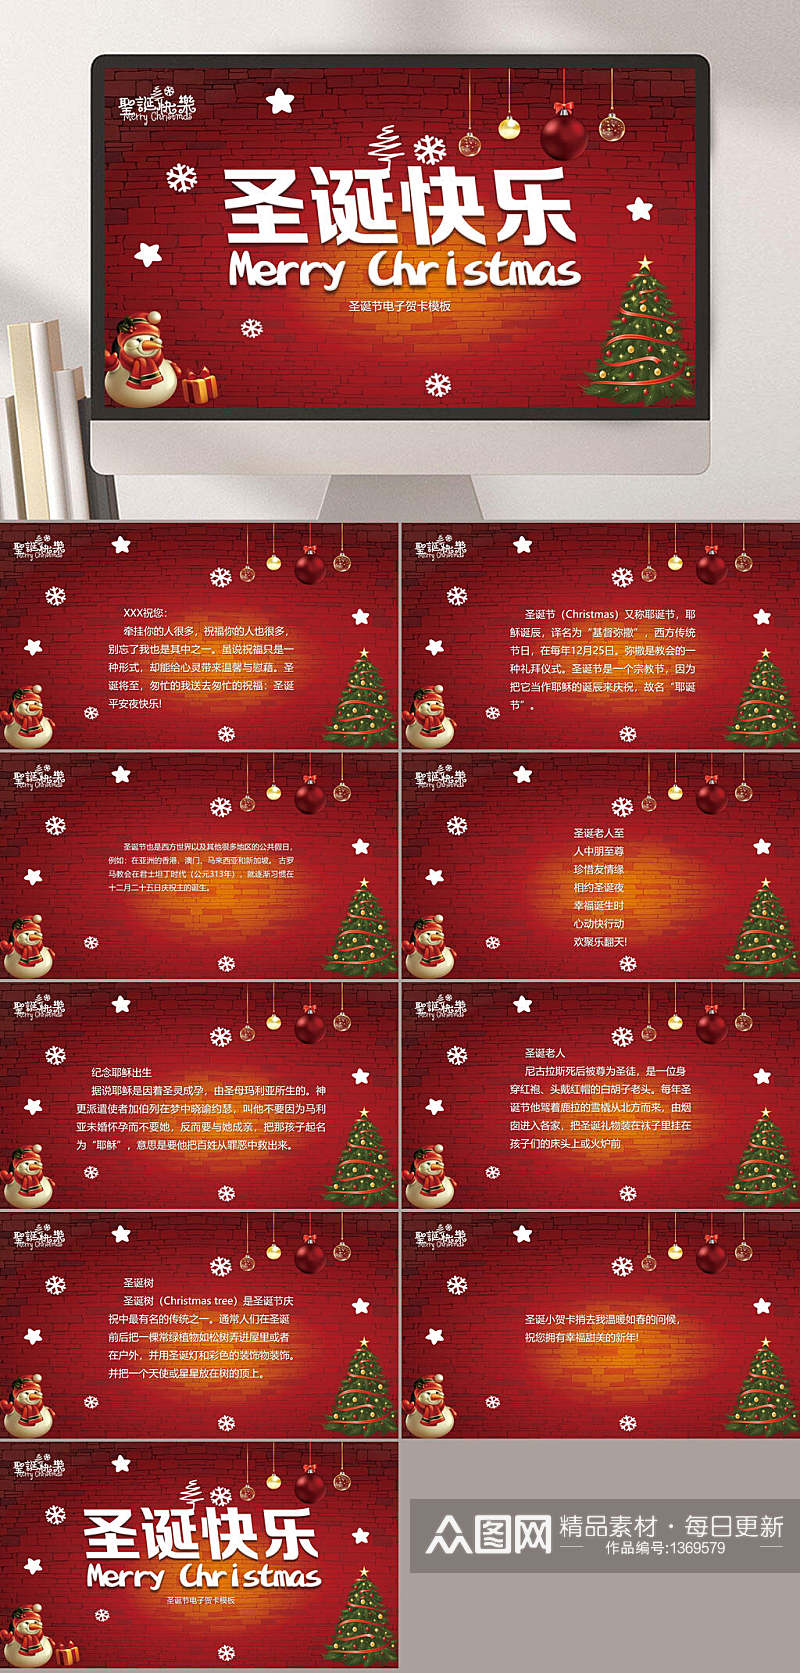 红色圣诞节电子贺卡PPT模板素材